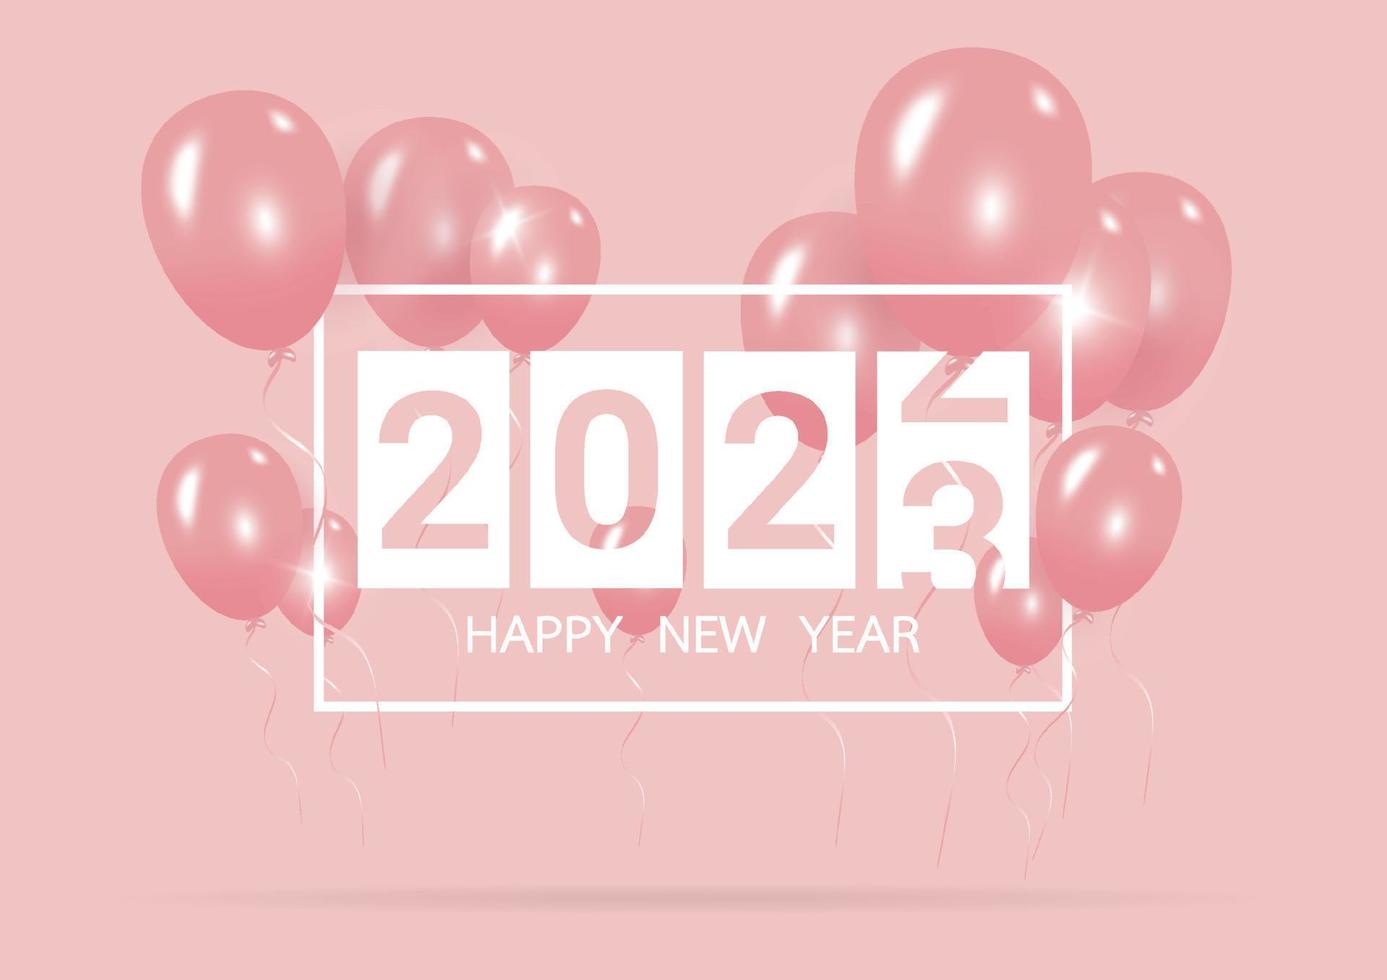 frohes neues jahr 2023 mit kreativem rosa ballonkonzept auf pastellrosa hintergrund für kopierraum. minimales Konzept. Vektor-Illustration vektor